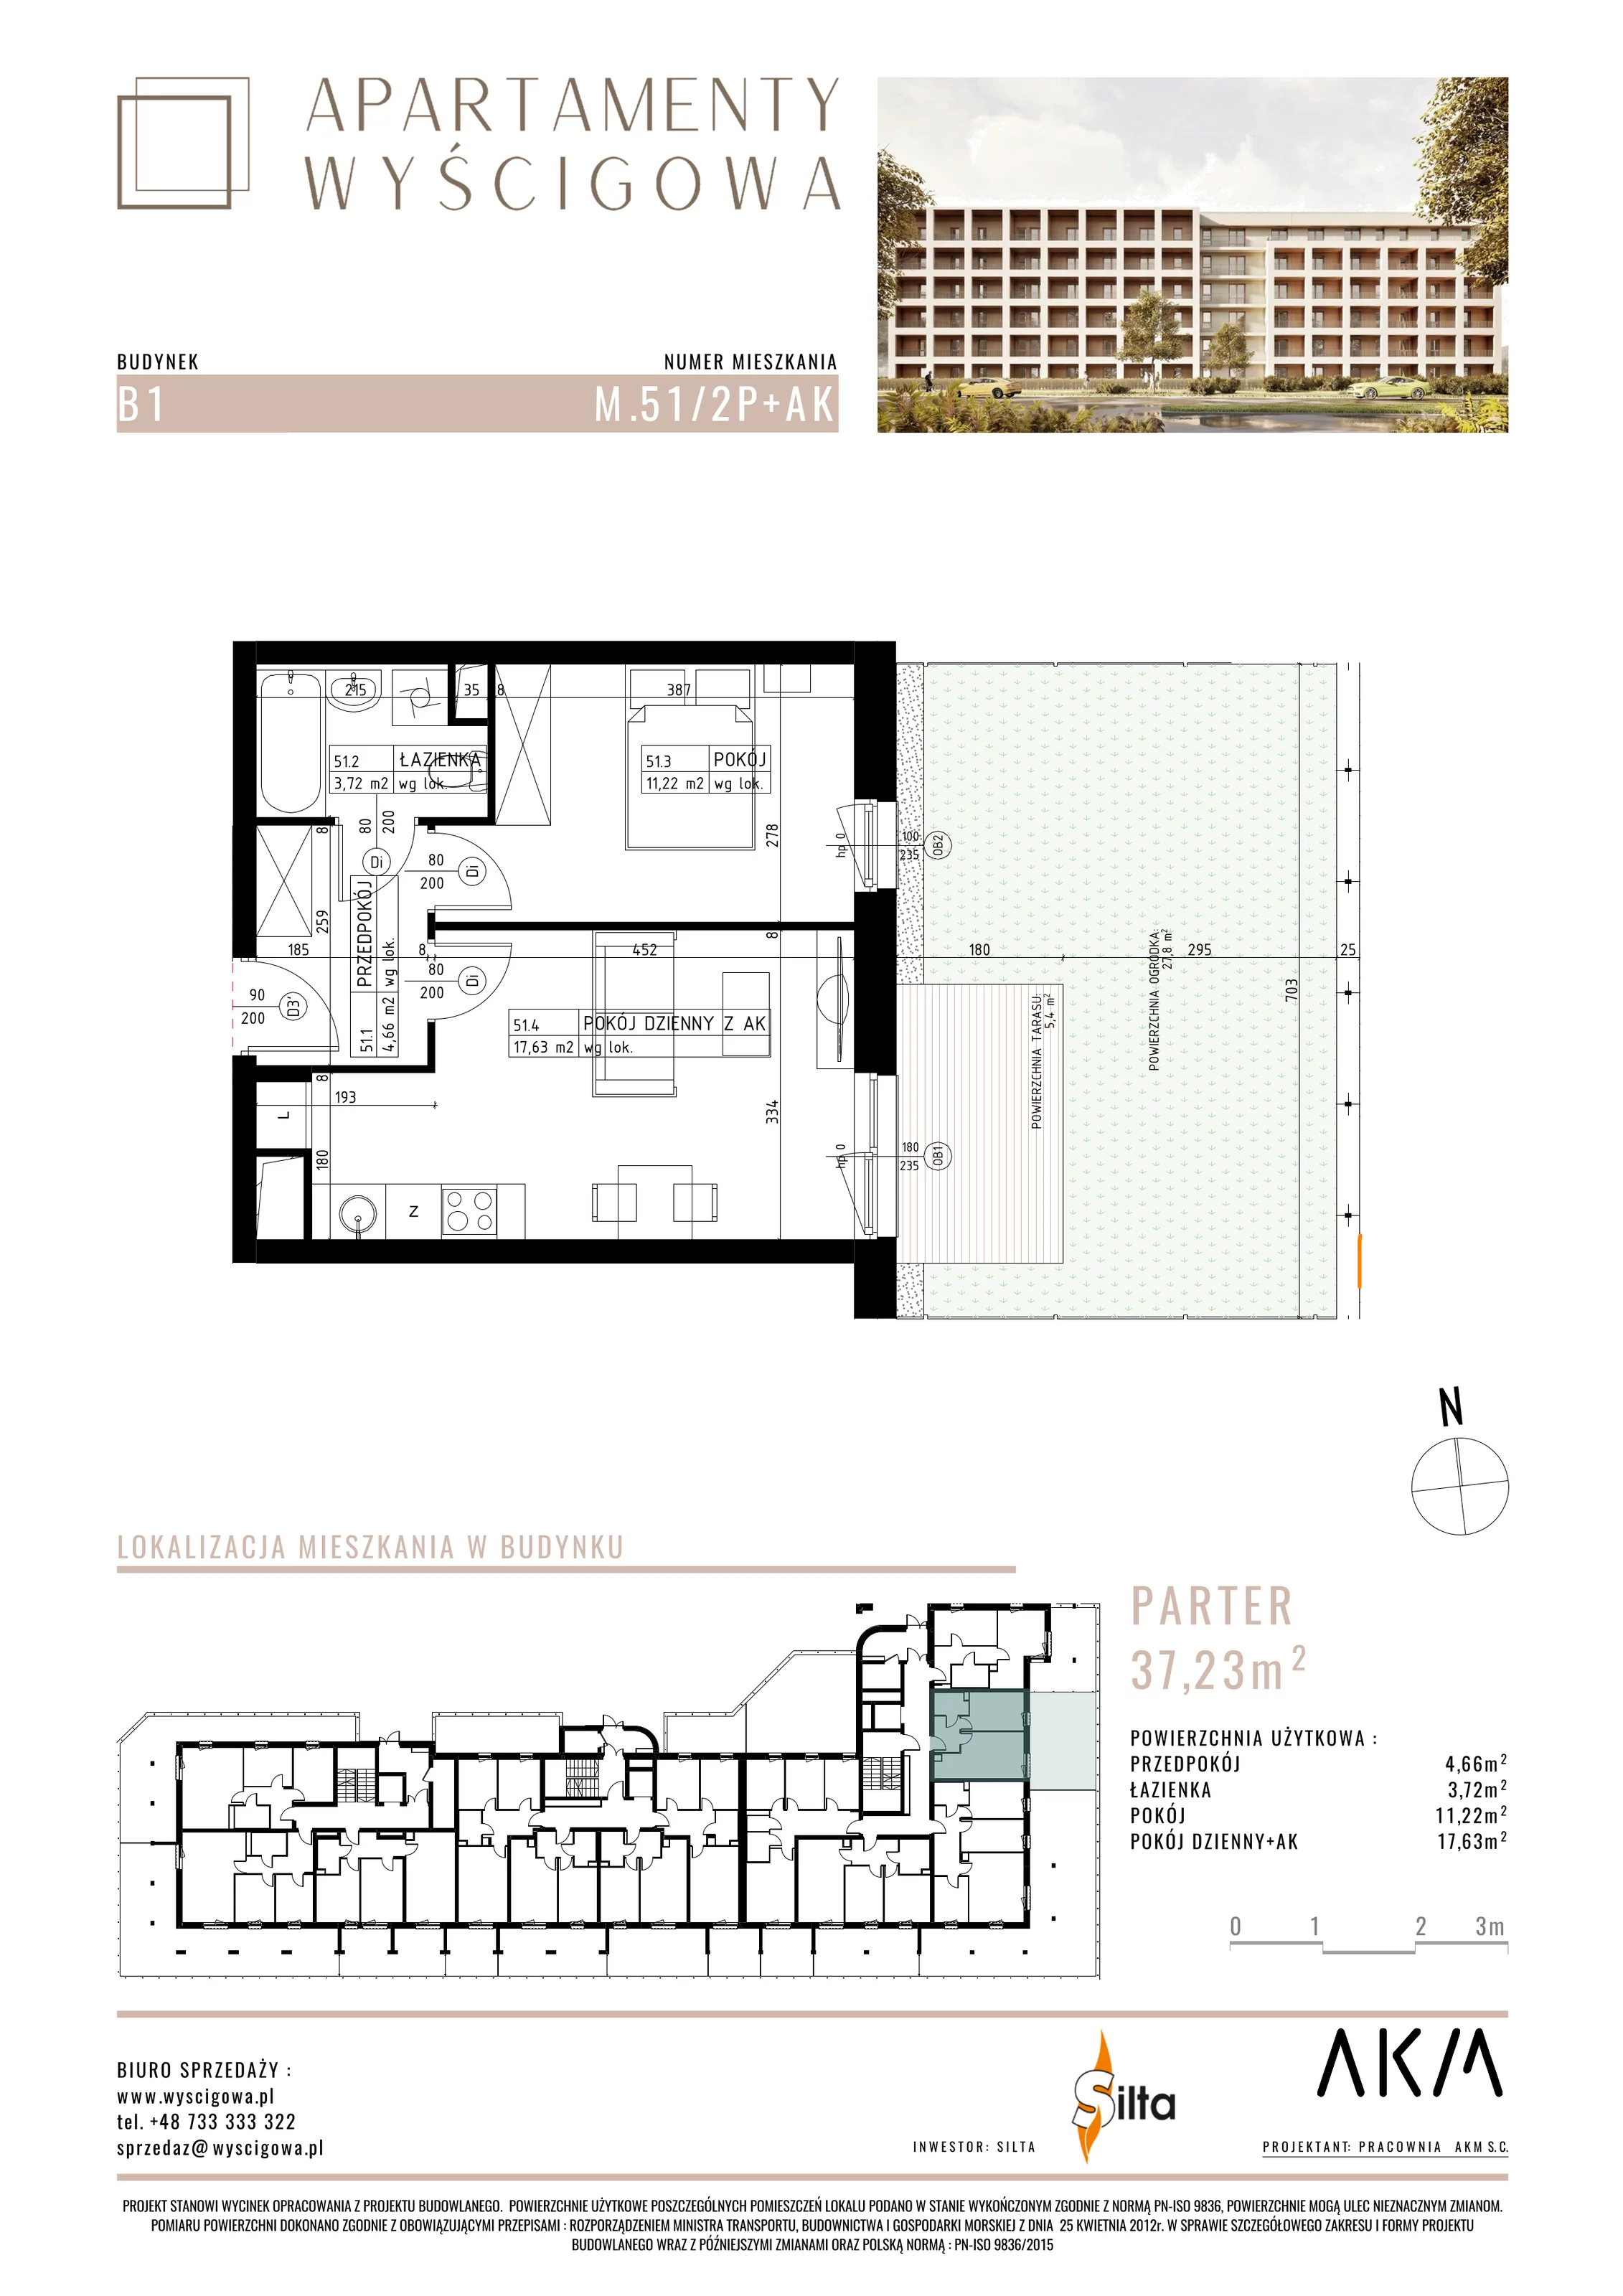 Mieszkanie 37,23 m², parter, oferta nr B1.M51, Apartamenty Wyścigowa, Lublin, Dziesiąta, Dziesiąta, ul. Wyścigowa